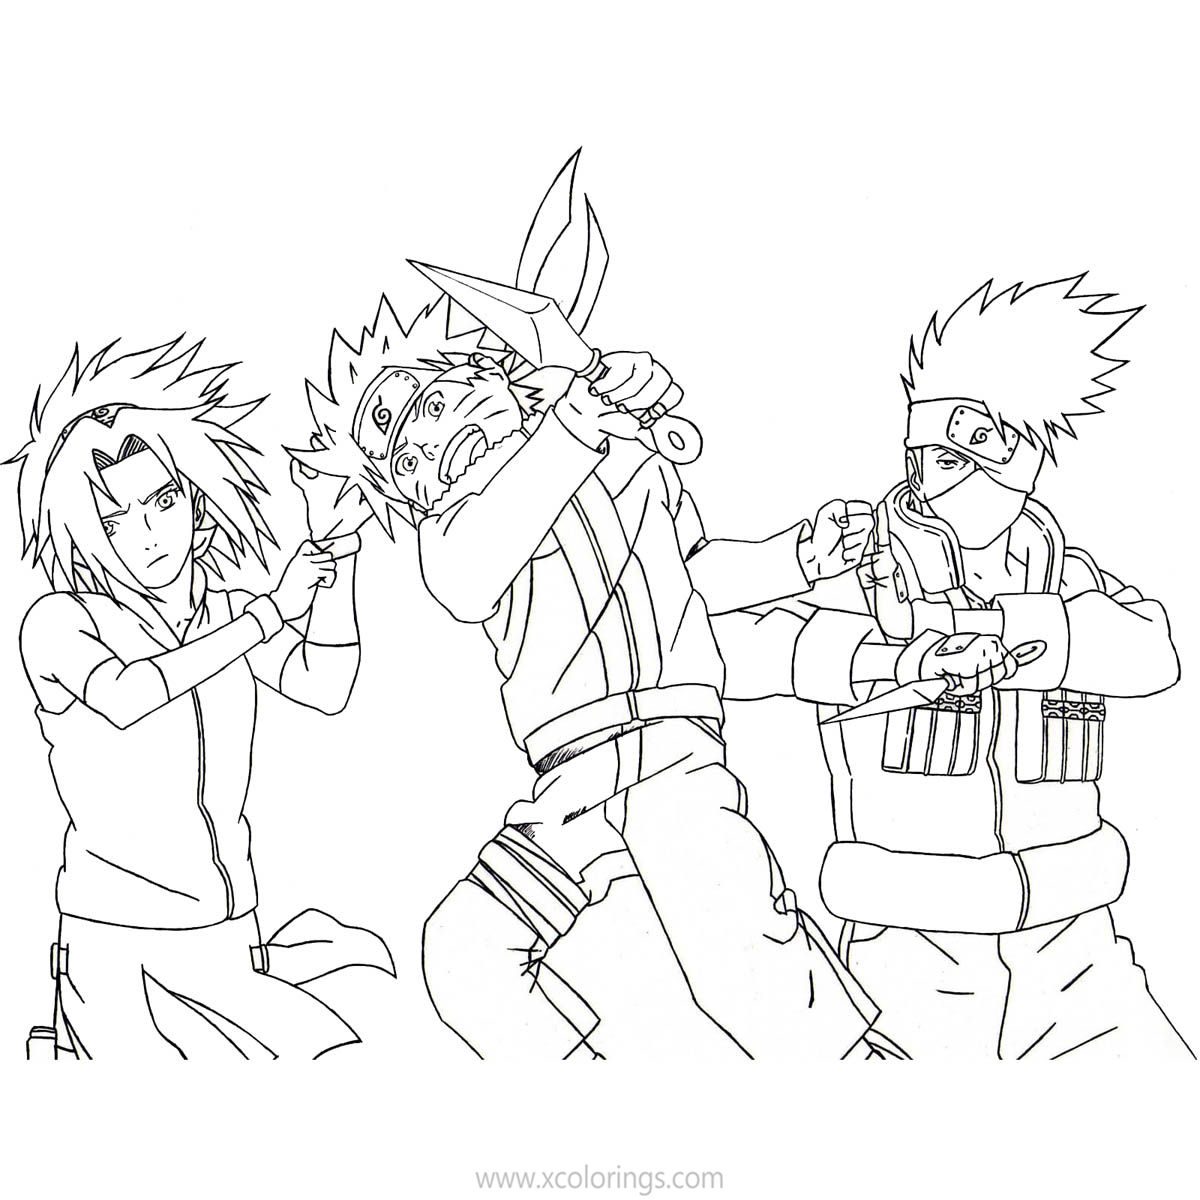 Free Kakashi Coloring Pages with Naruto and Sasuke printable